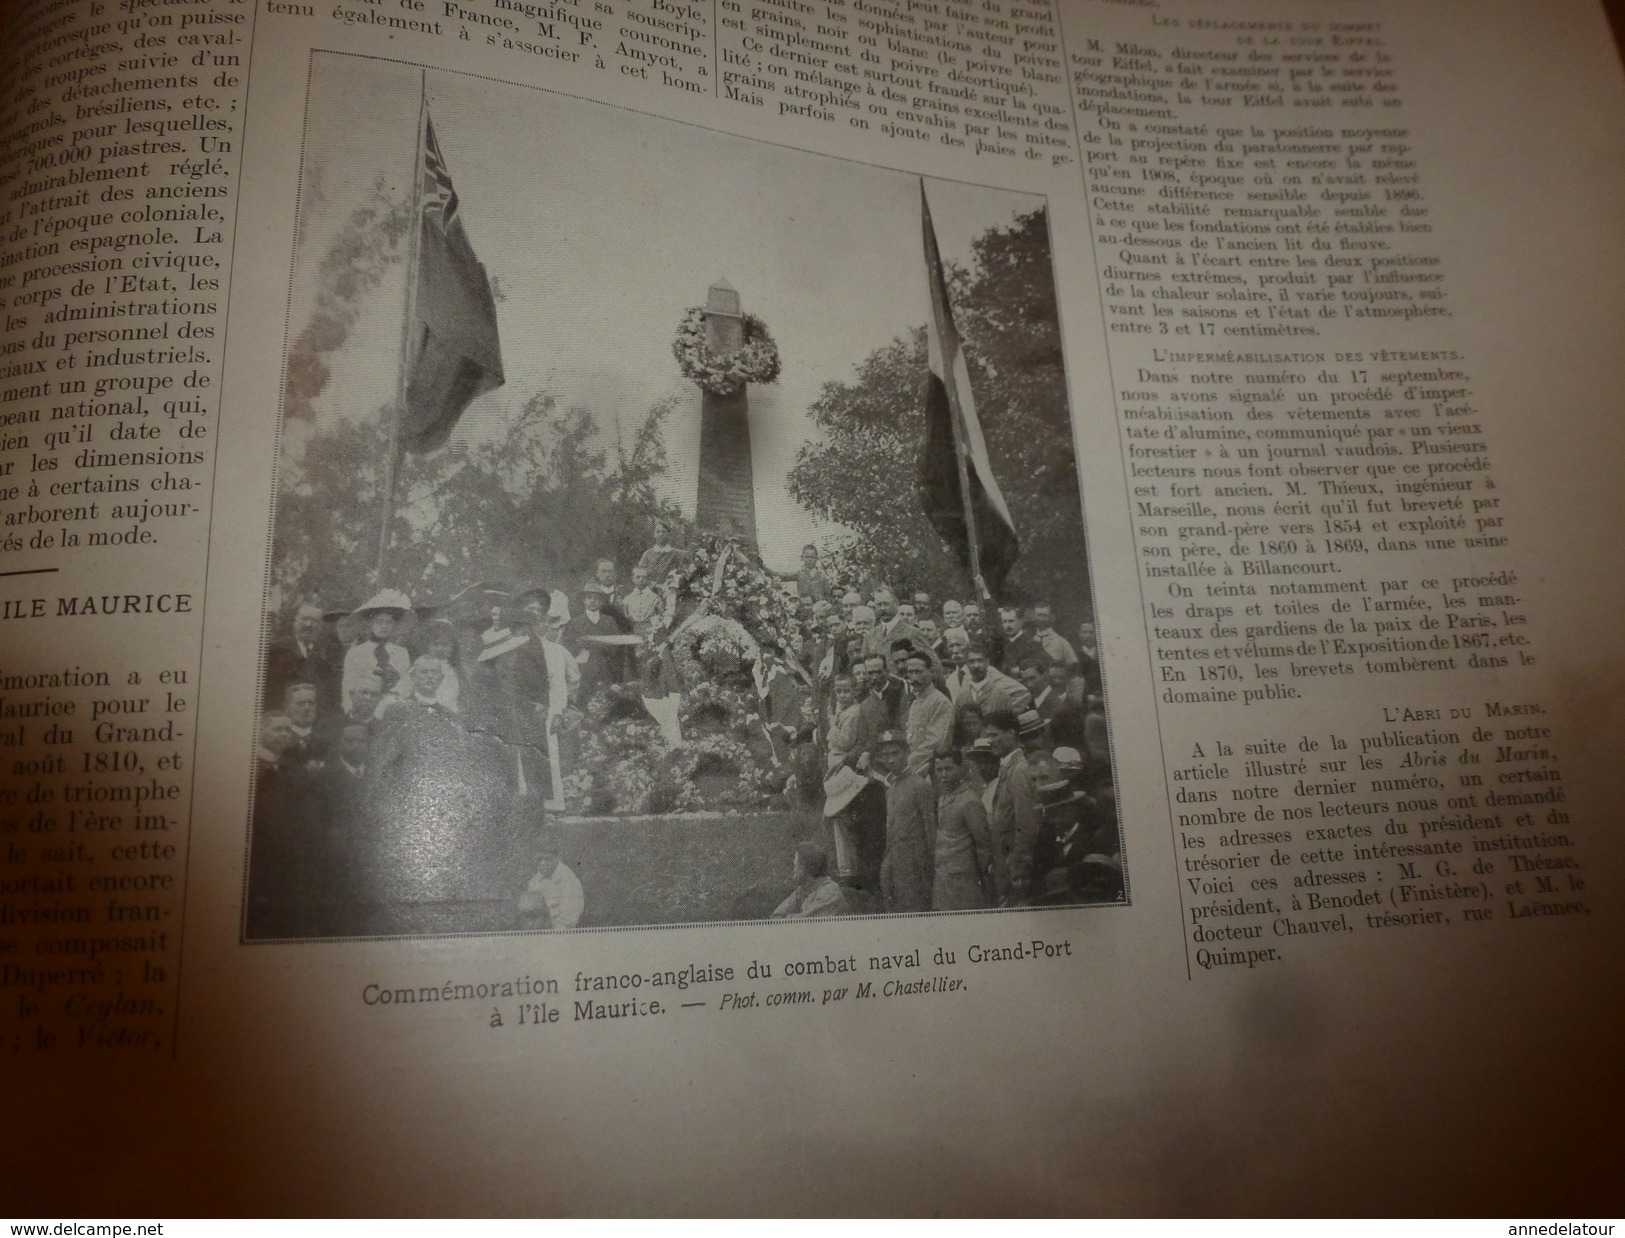 1910 L'ILLUSTRATION:Révolution à LISBONNE(Lisboa) ,pl. dom Pedro,etc (important doc.texte-photos);Mexique;L'île Maurice